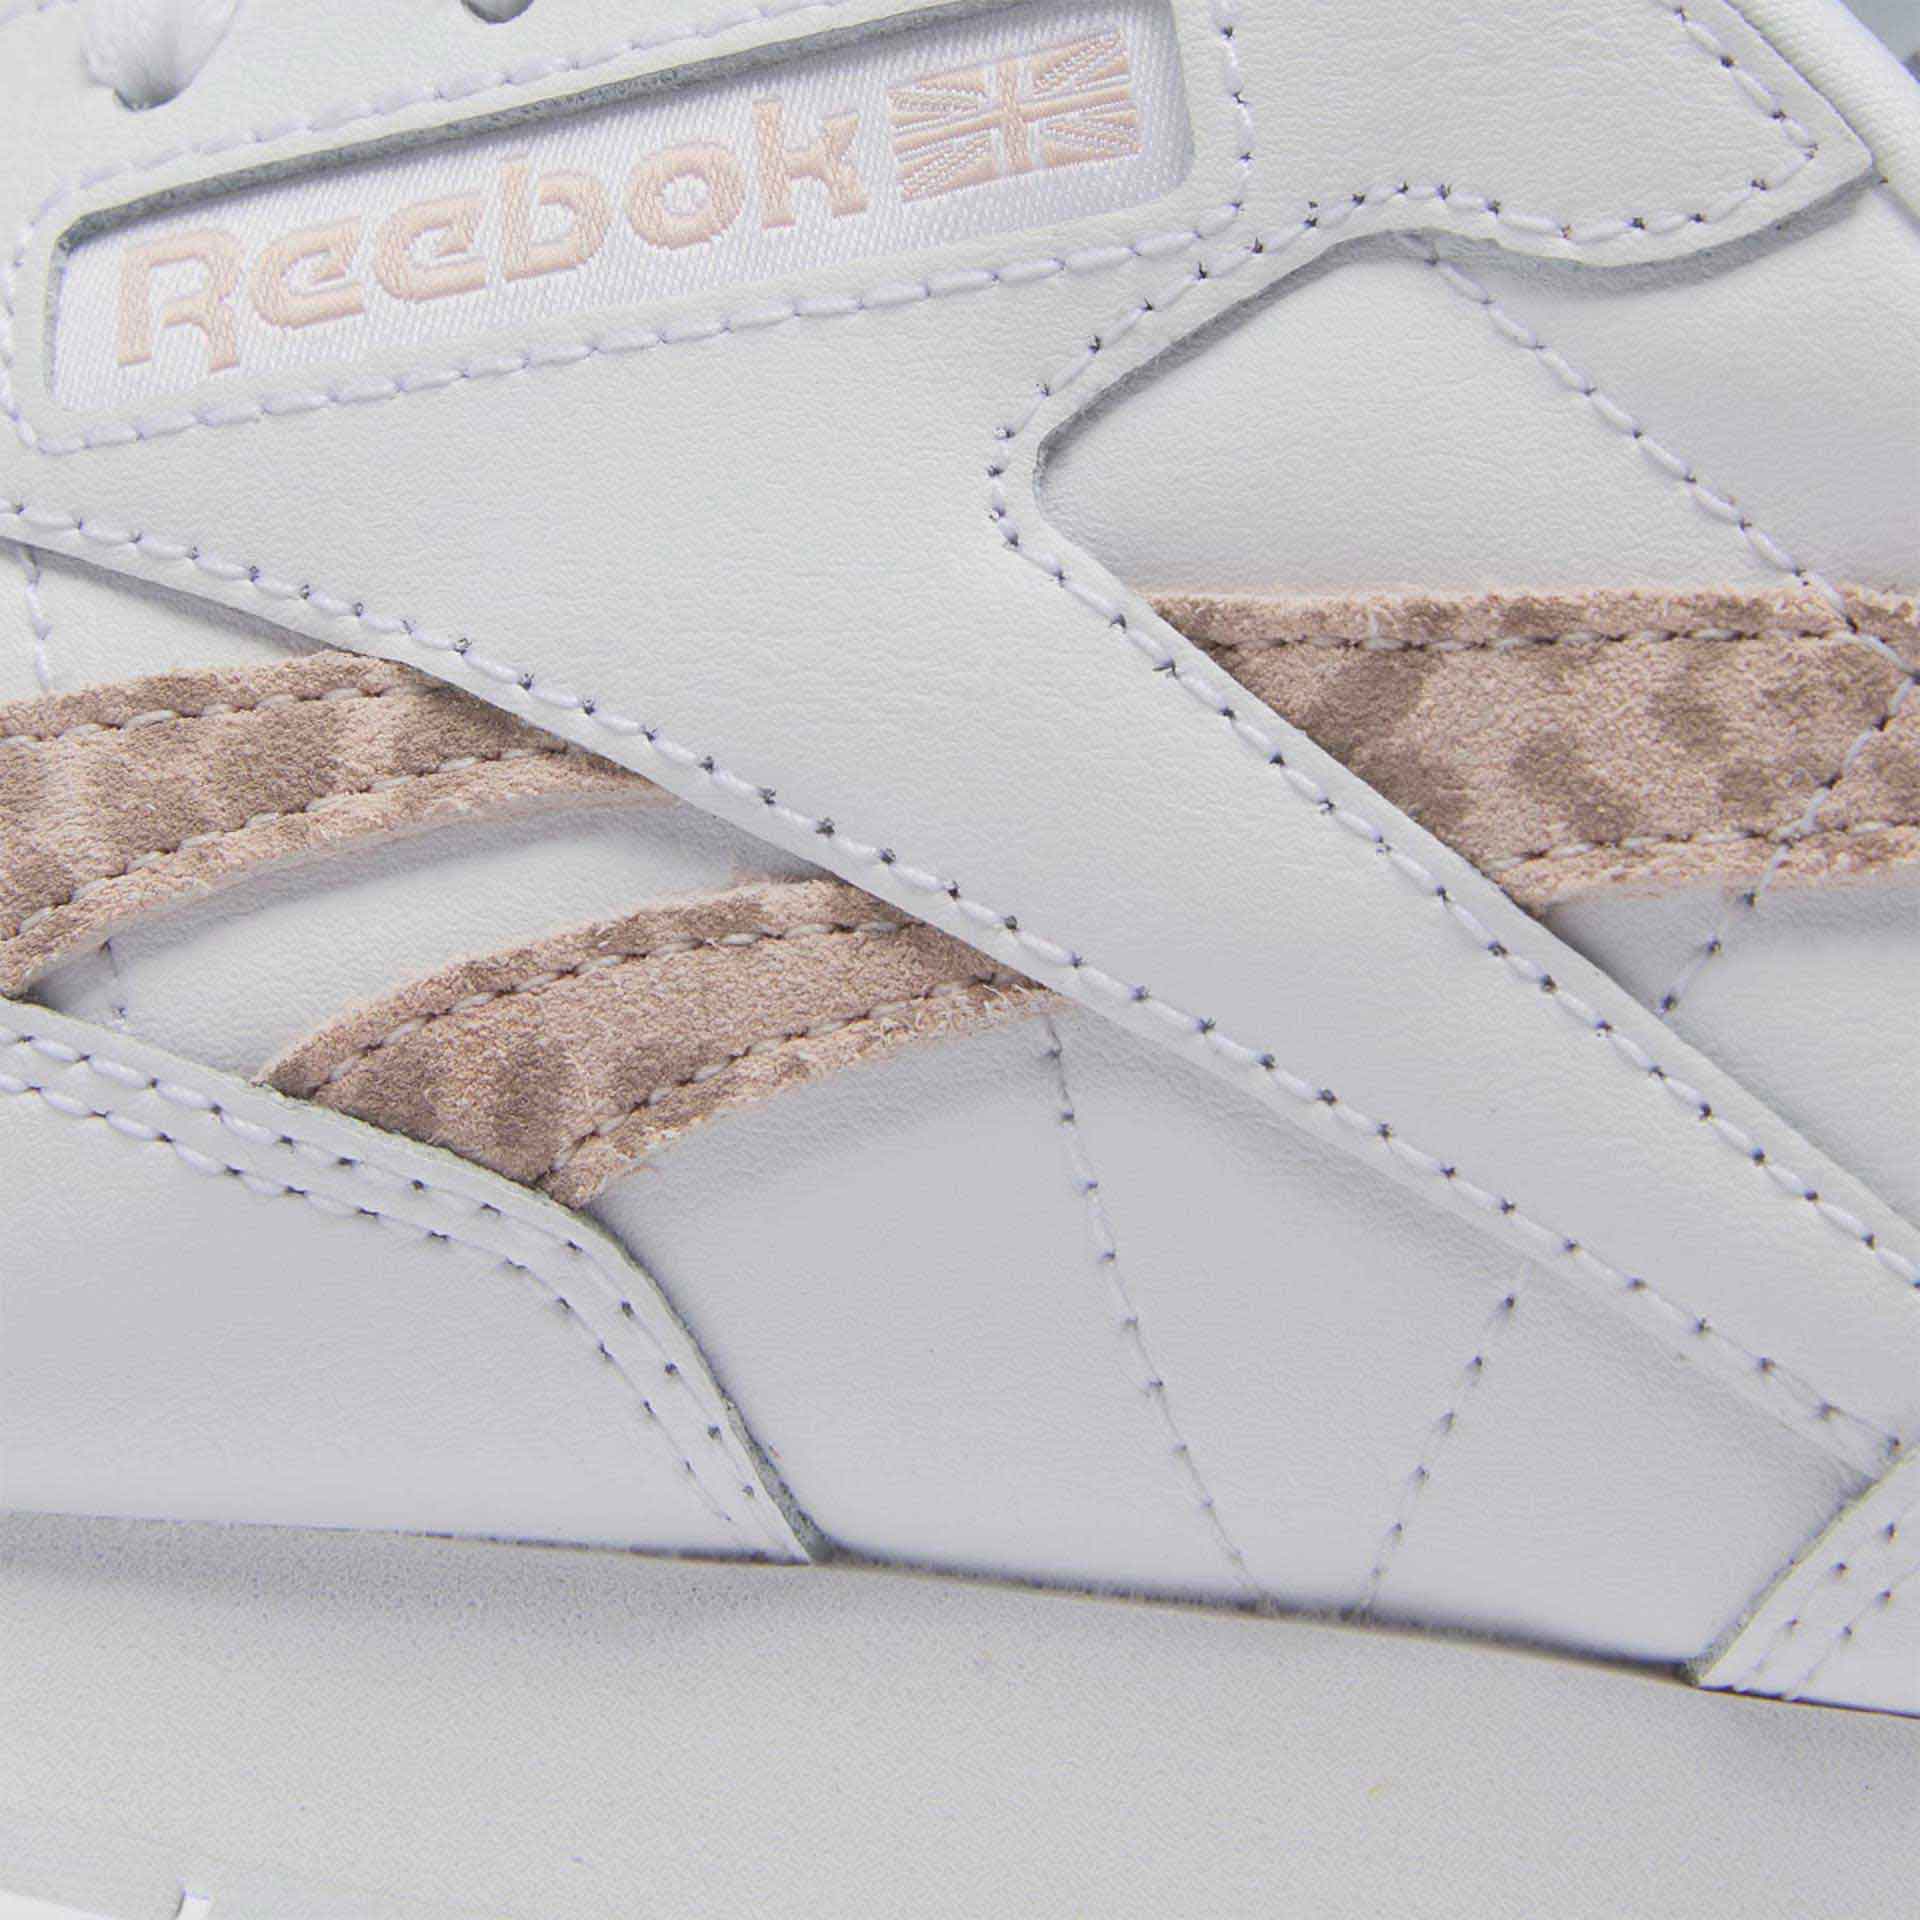 Reebok Classic Leather Sneaker Cloud White / Soft Ecru / Cloud White